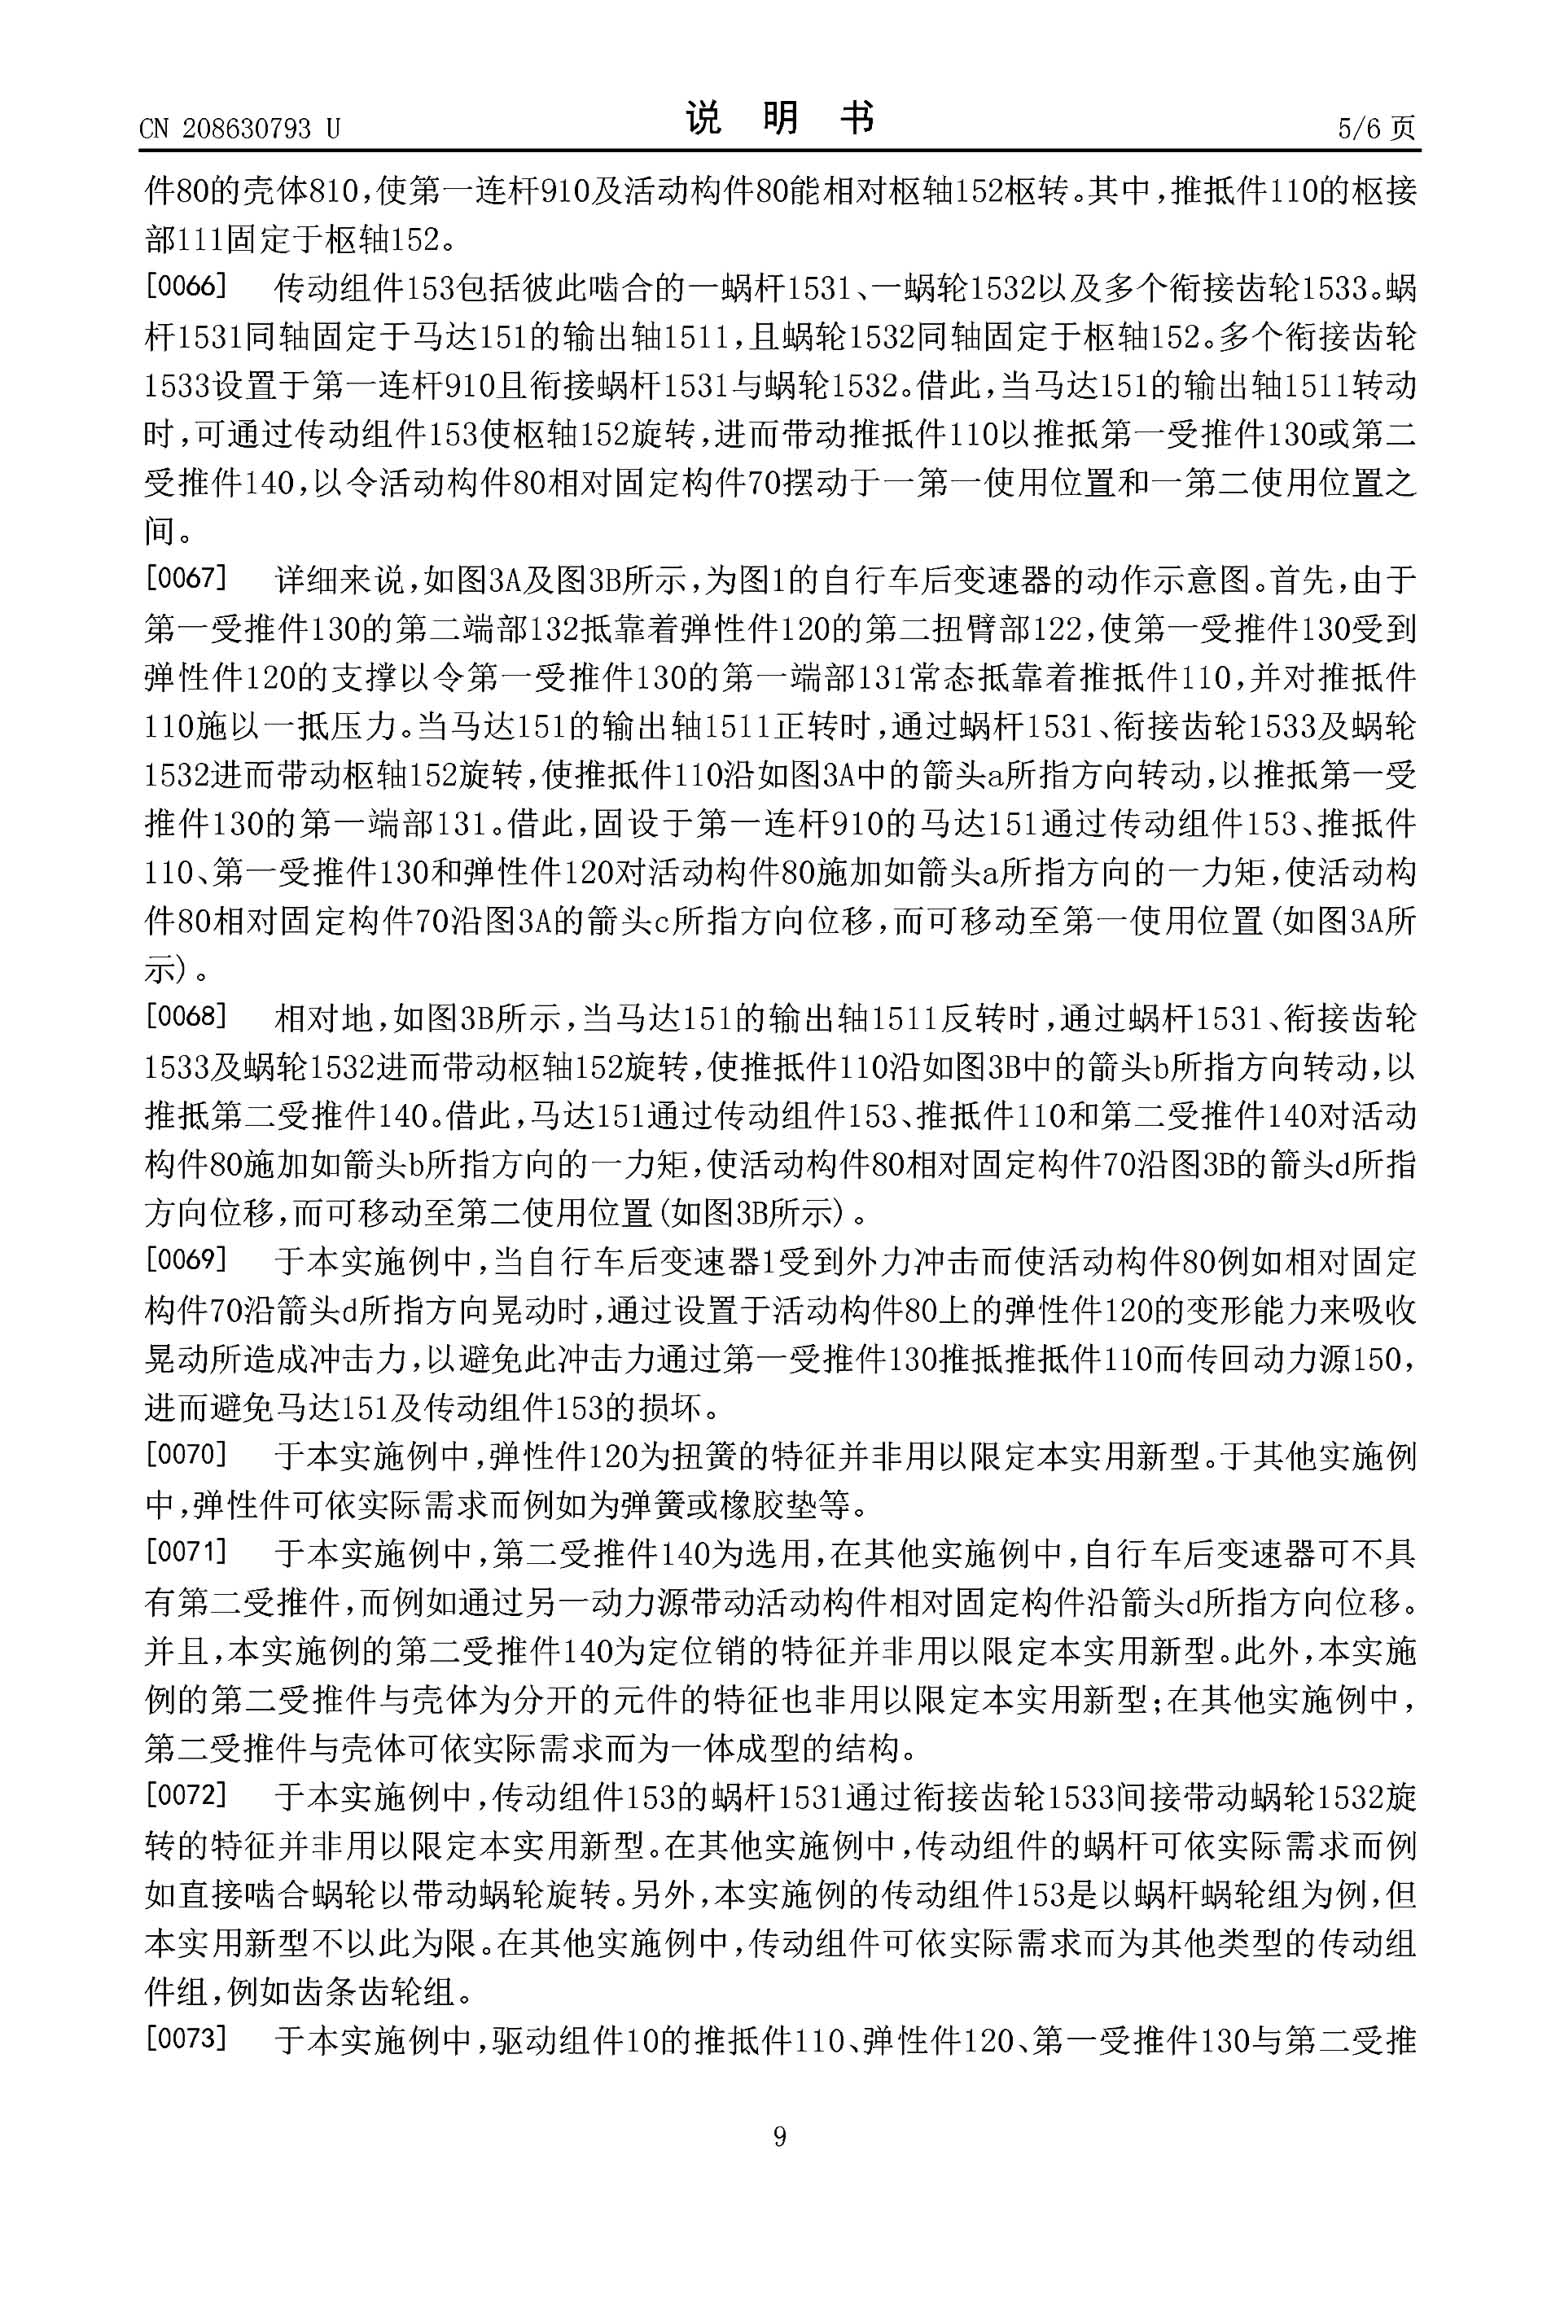 Chinese Patent CN208630793U page 09 main image